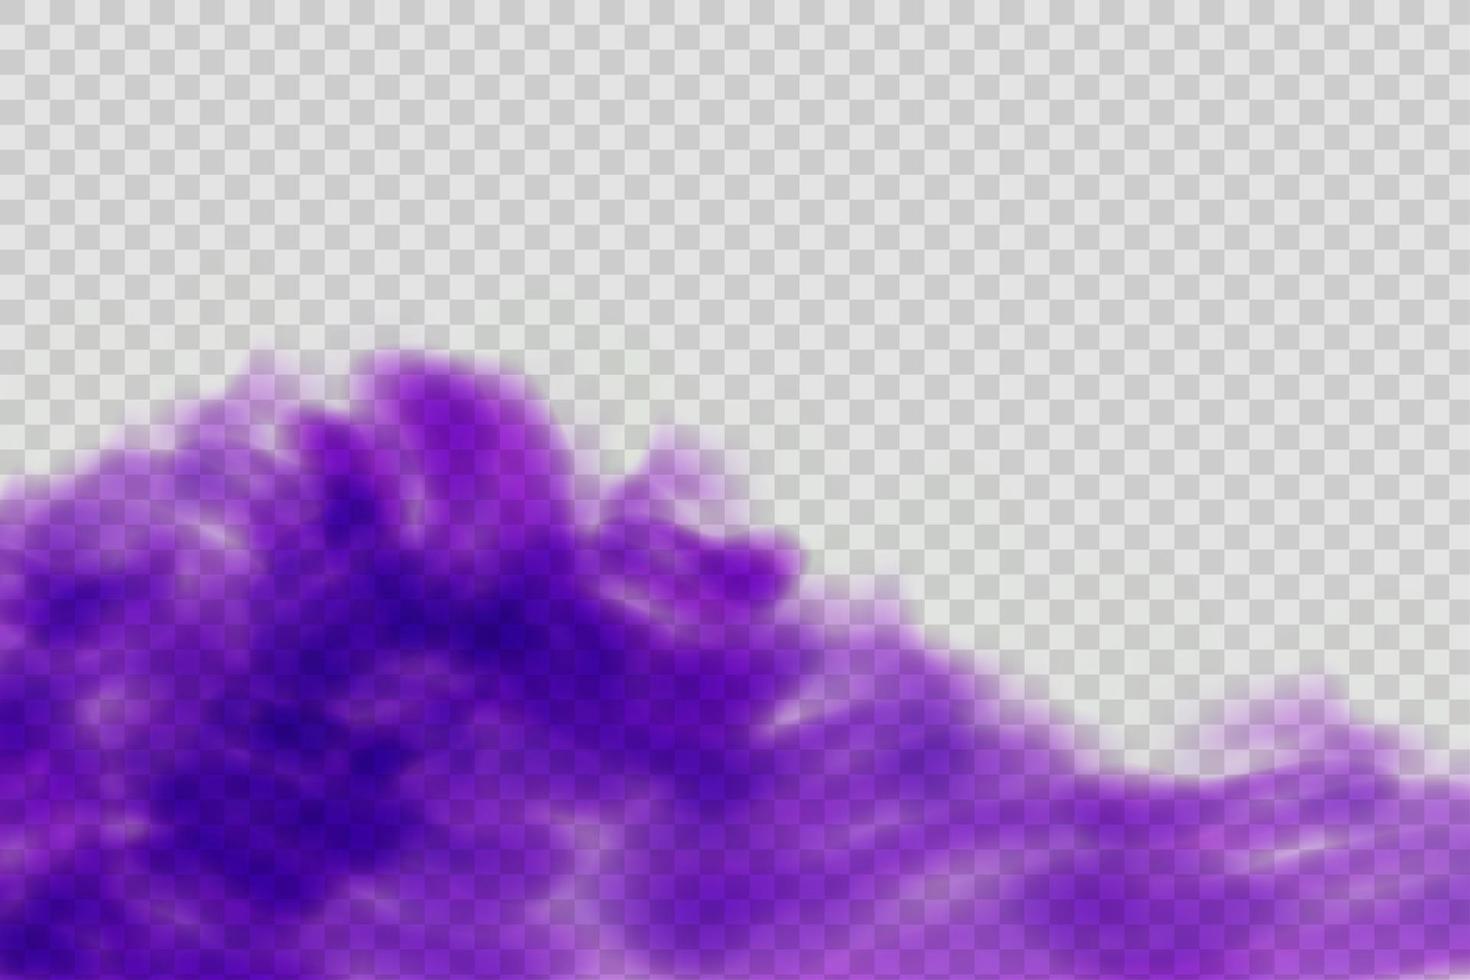 niebla violeta mística aterradora realista en la noche de halloween. gas venenoso púrpura, efecto de polvo y humo. vector